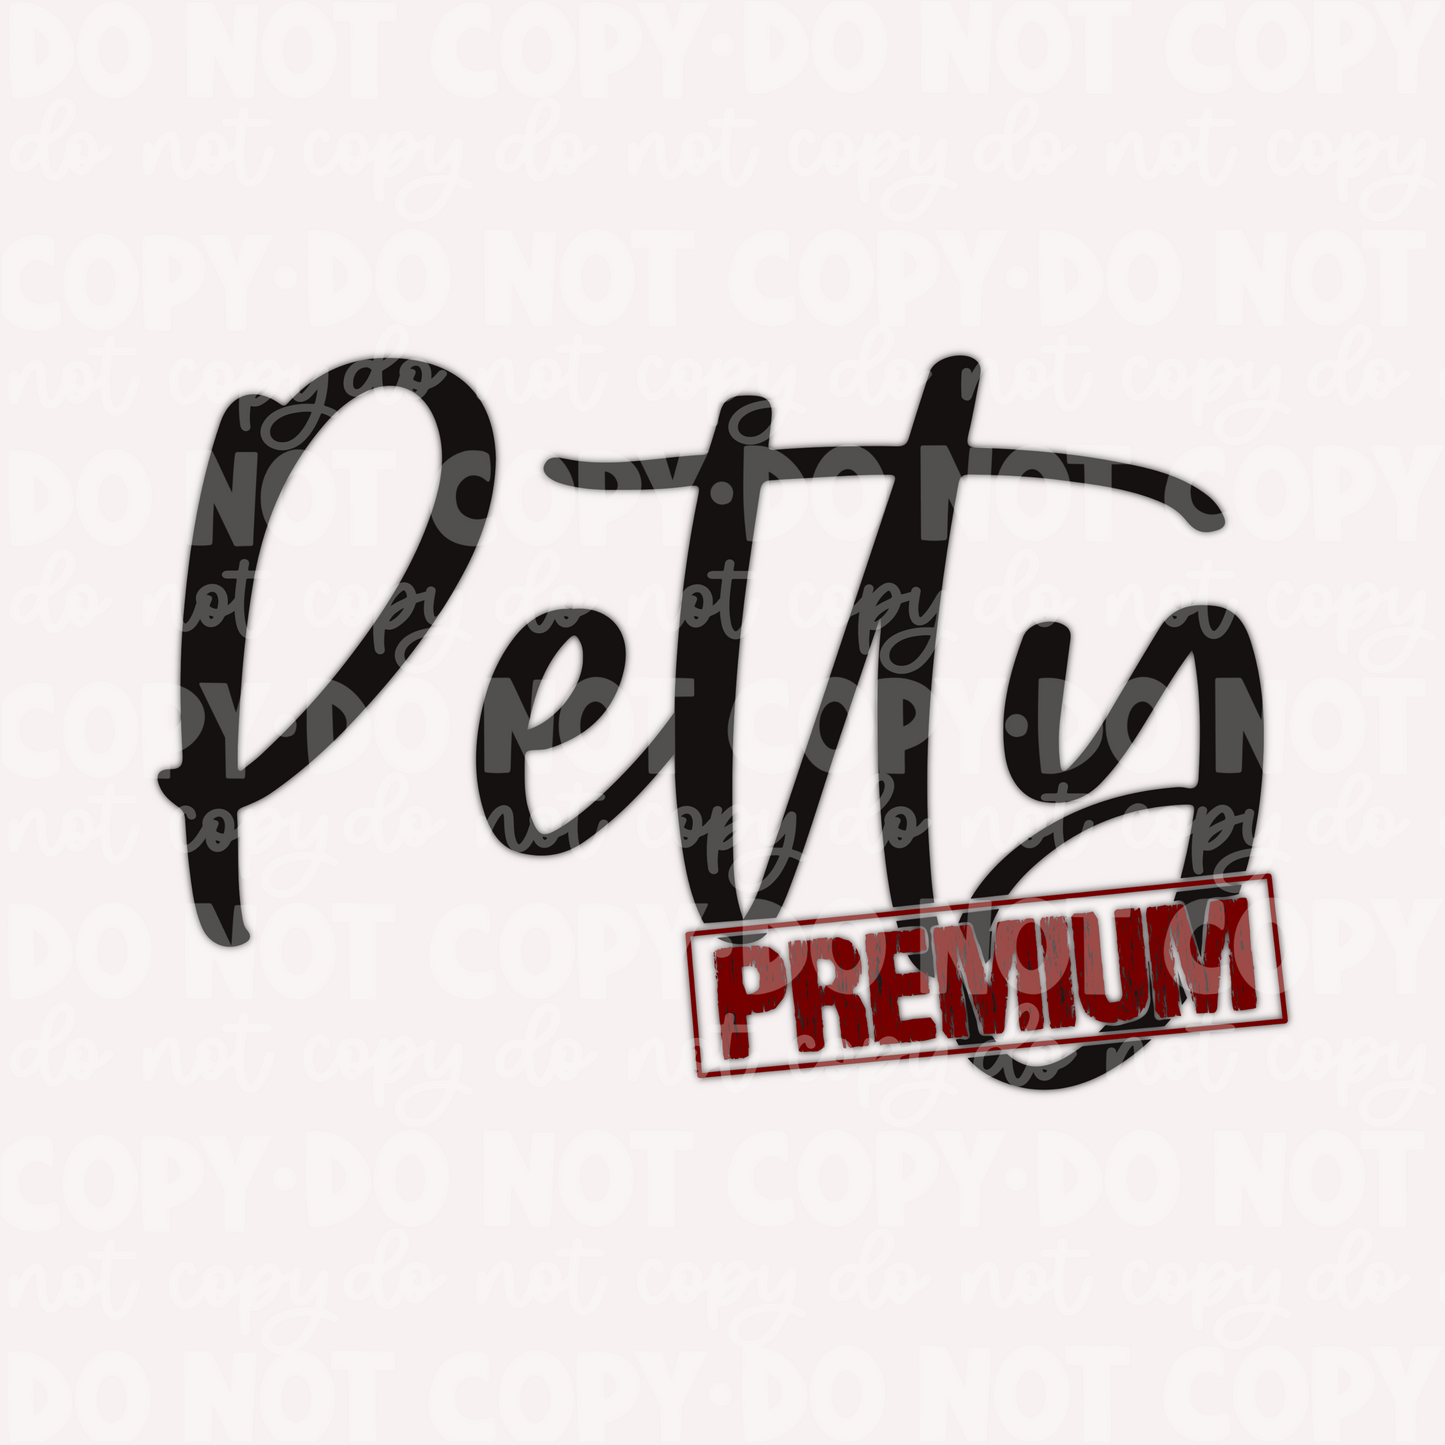 Petty Premium-DIGITAL DOWNLOAD